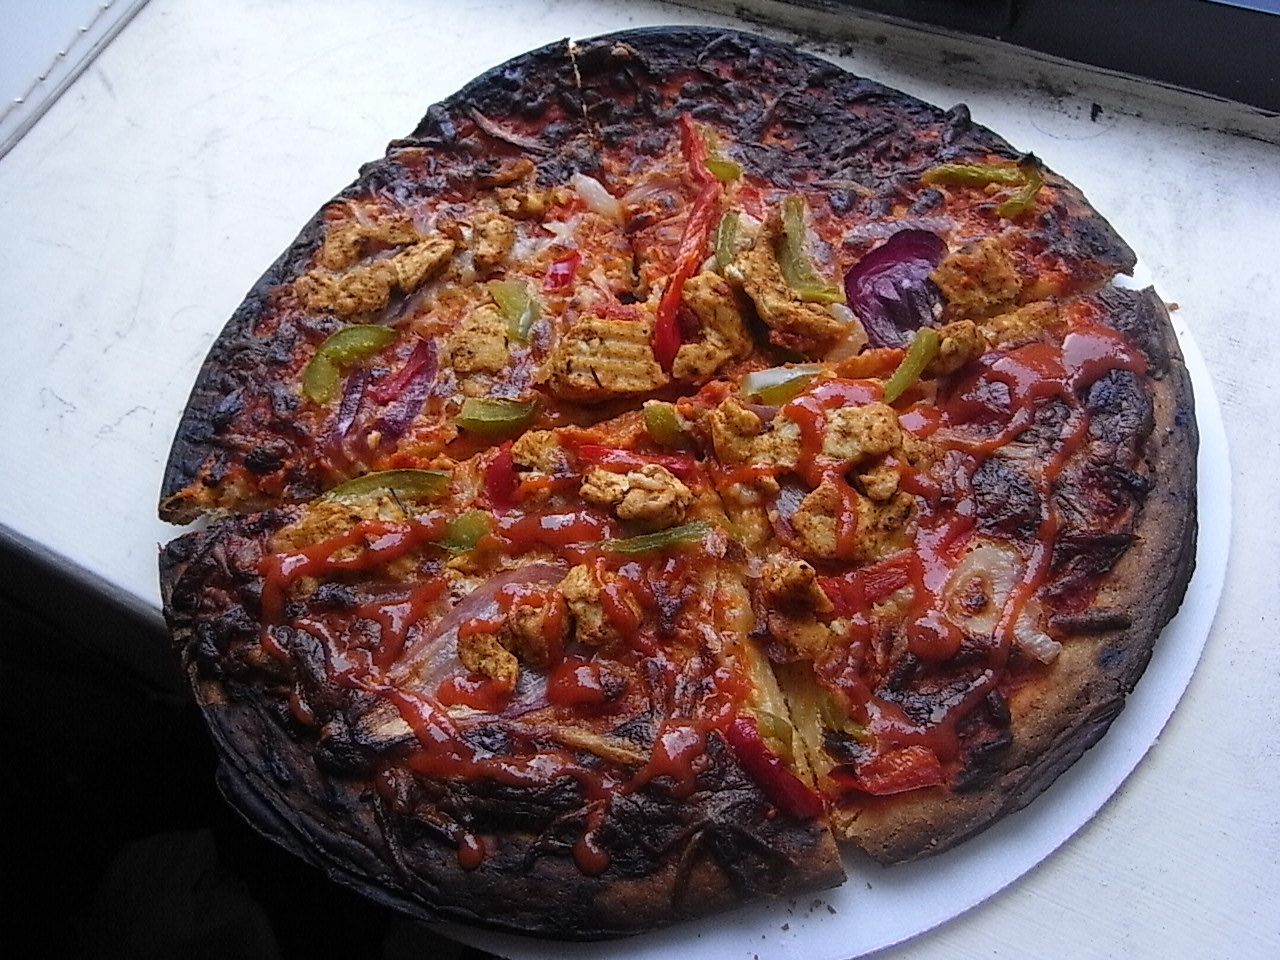 я хочу пиццу я хочу чтобы ты приправил ее соусом сыром сжег заставил плакать фото 87